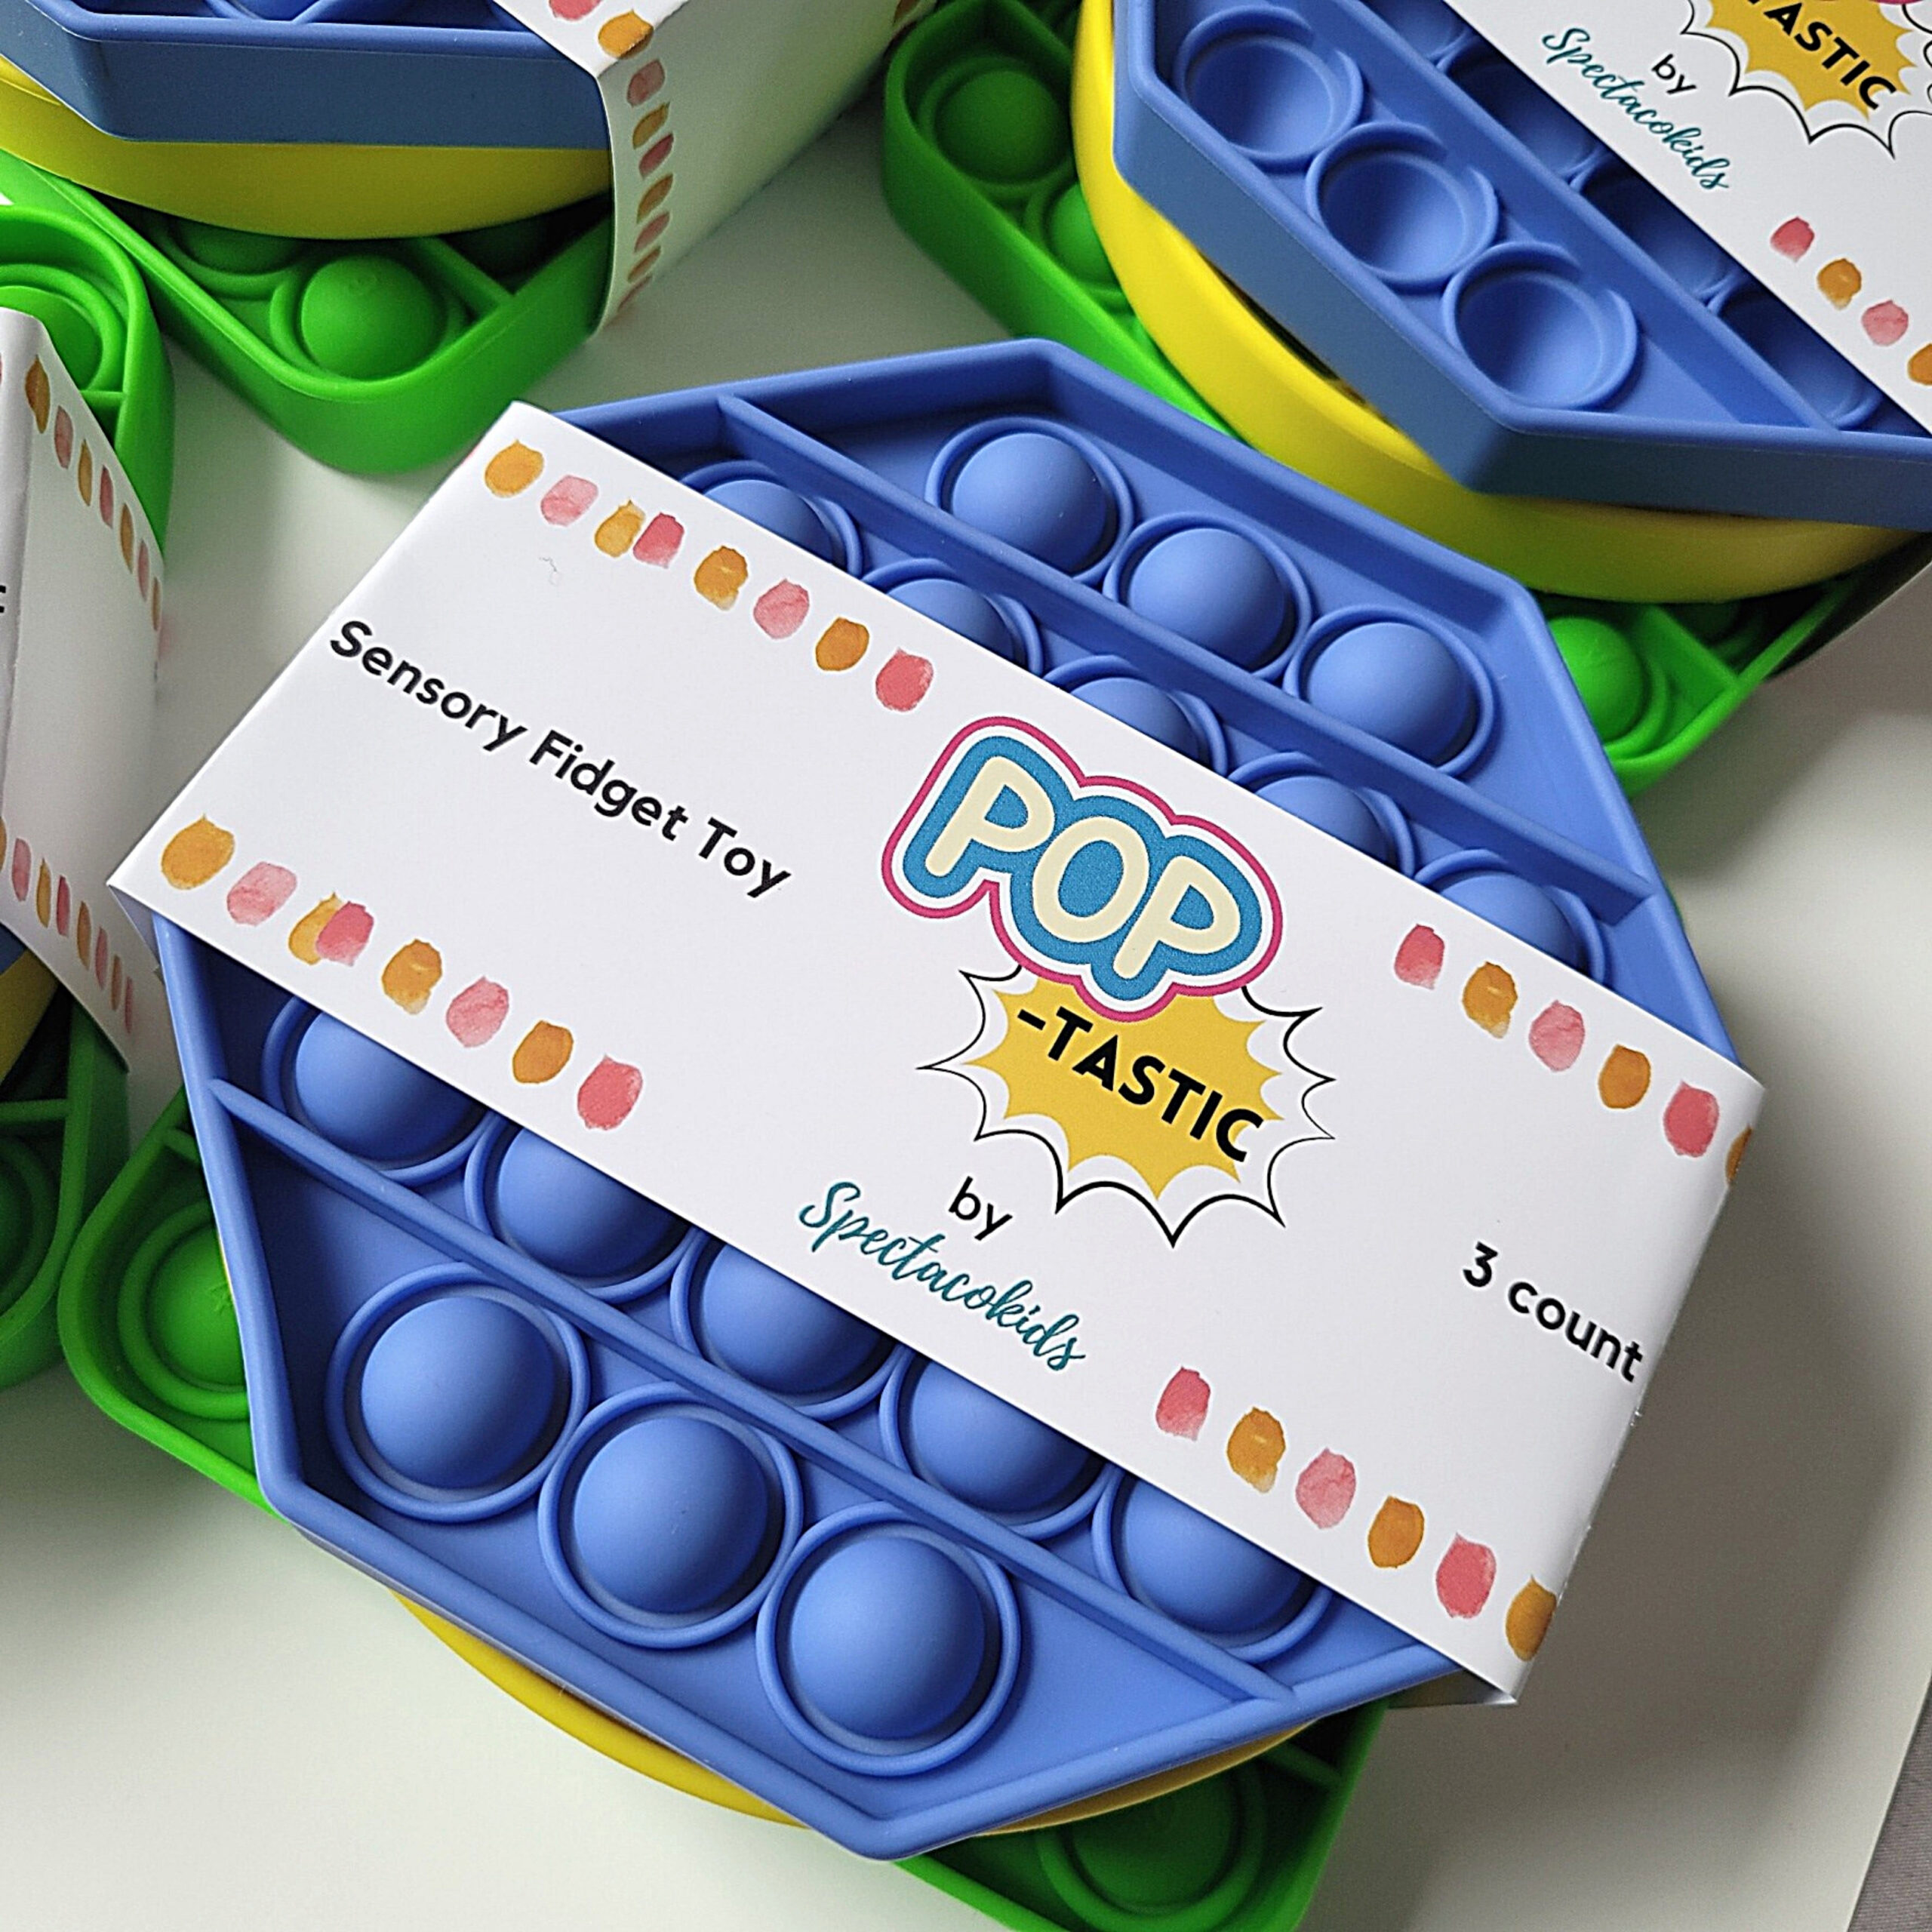 Pop It Board Game – The Fidget Toy Box